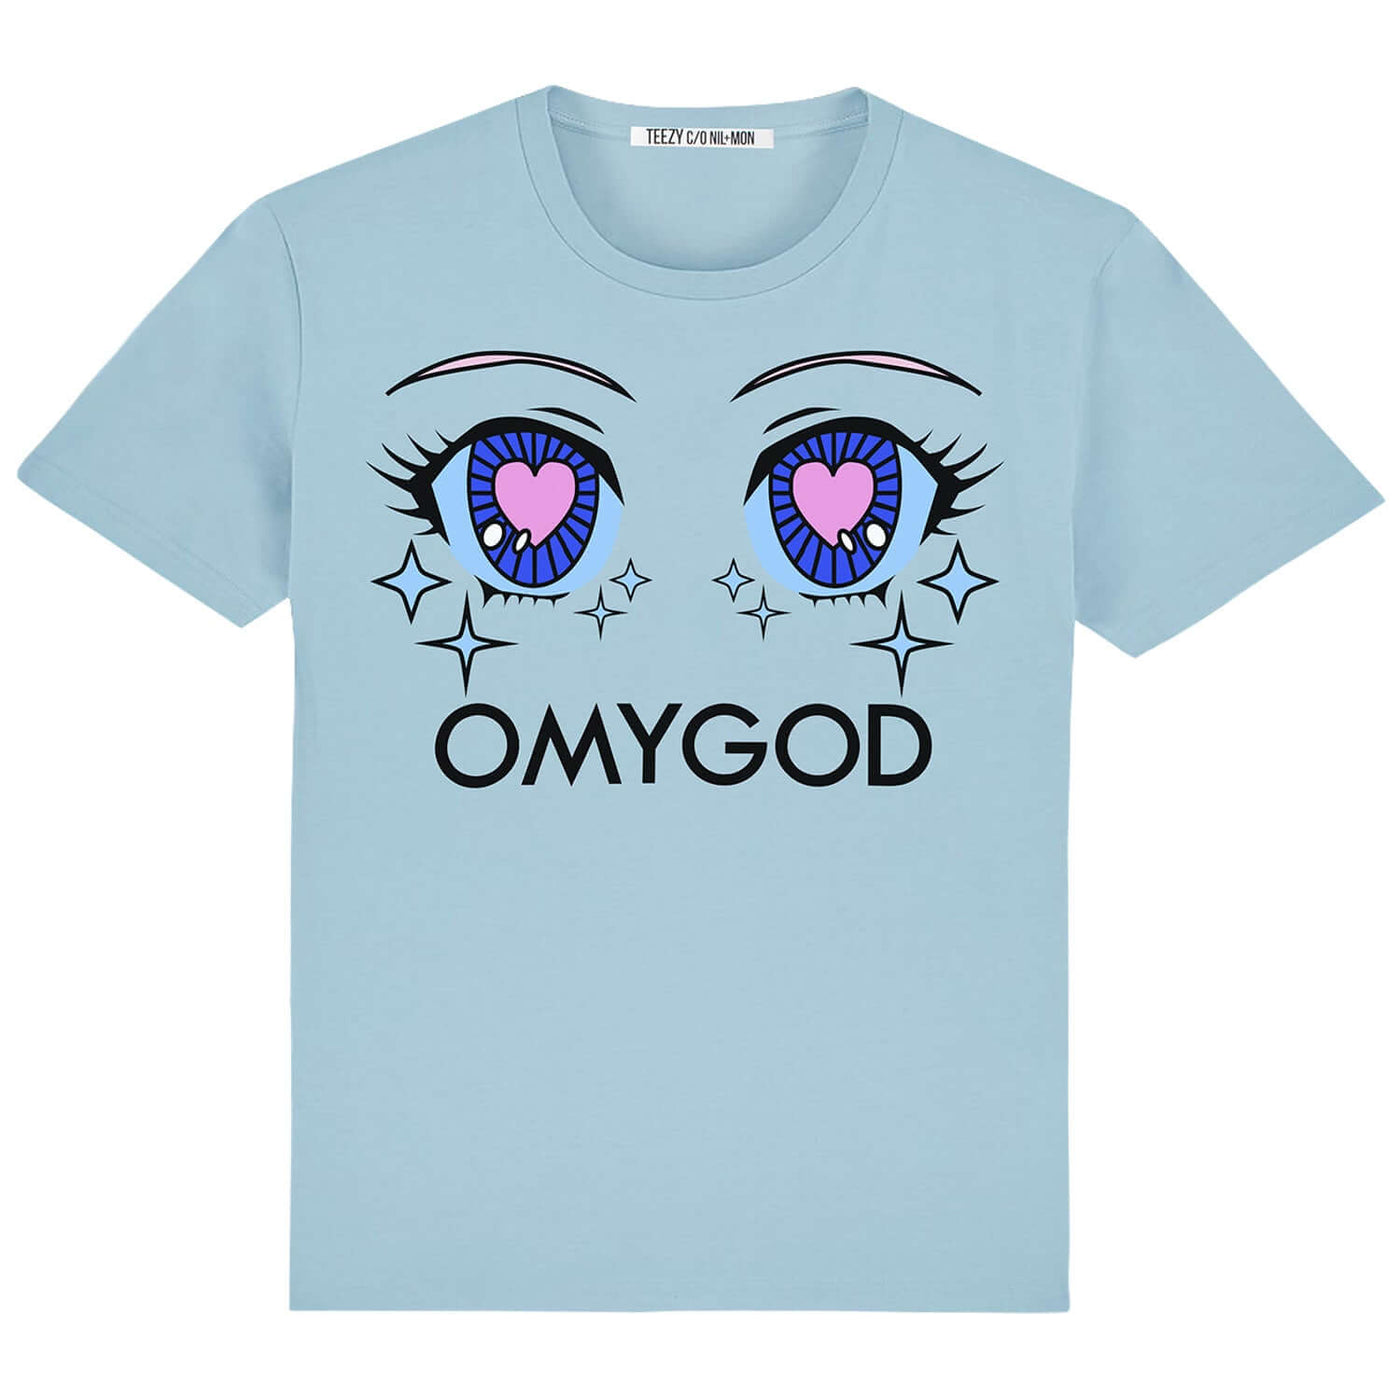 T-Shirt "TZ OMYGOD" - light blue